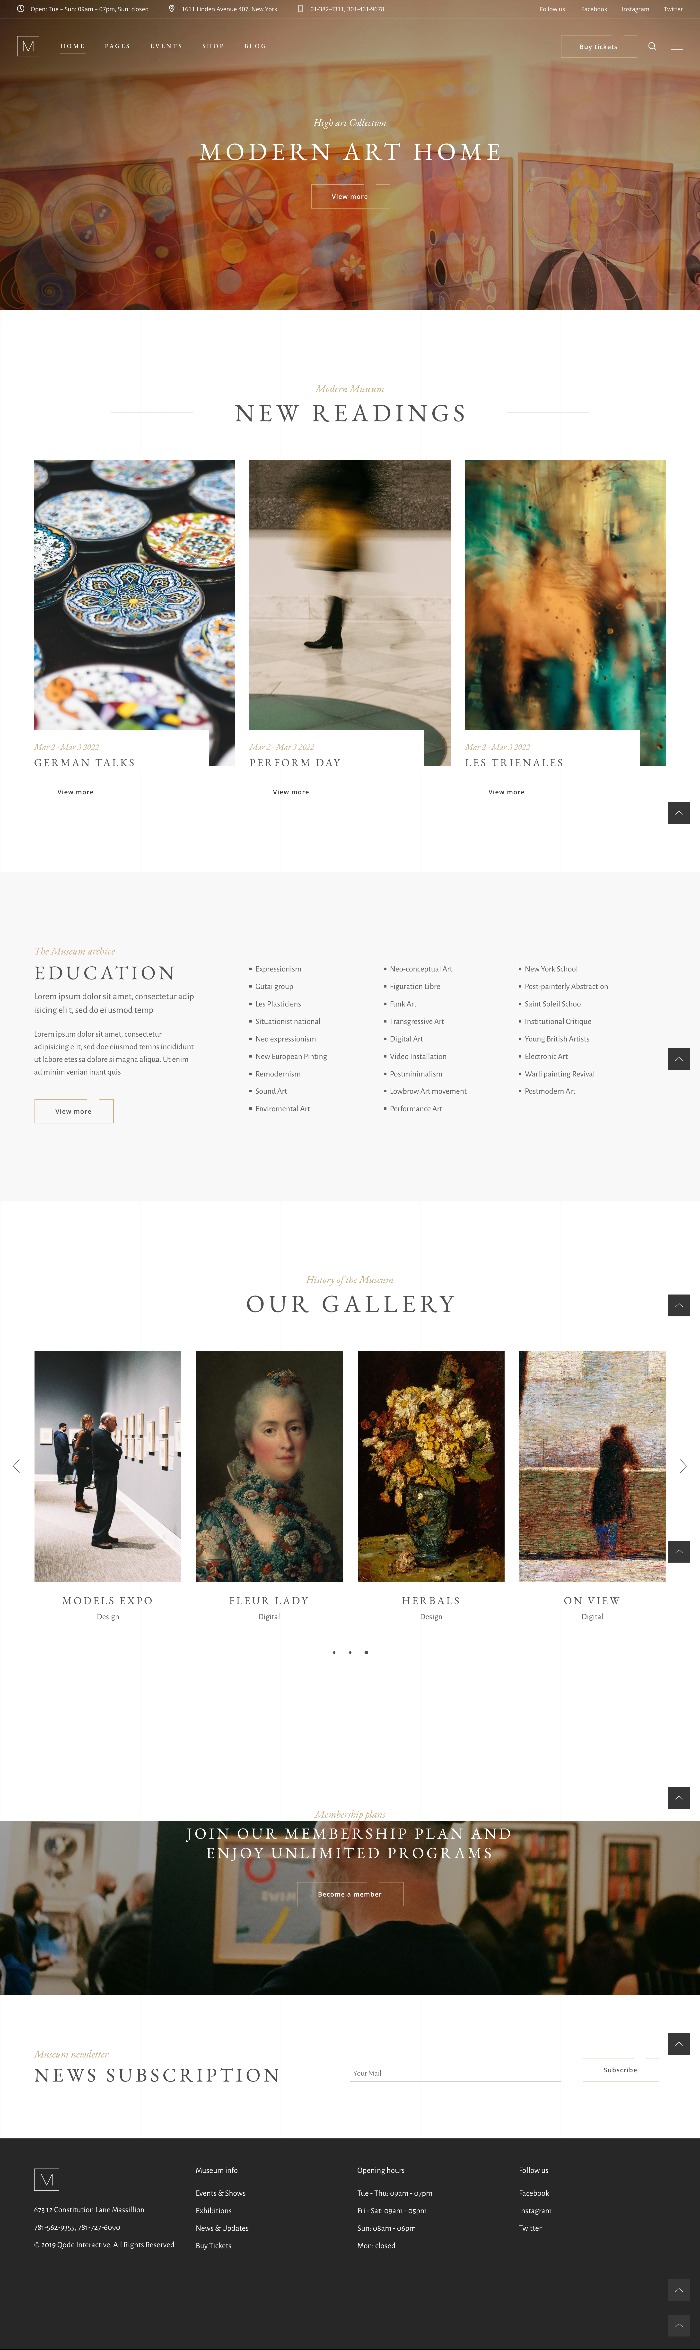 Mẫu Website Giới Thiệu Sản Phẩm Tranh Vẽ Musea Home 2